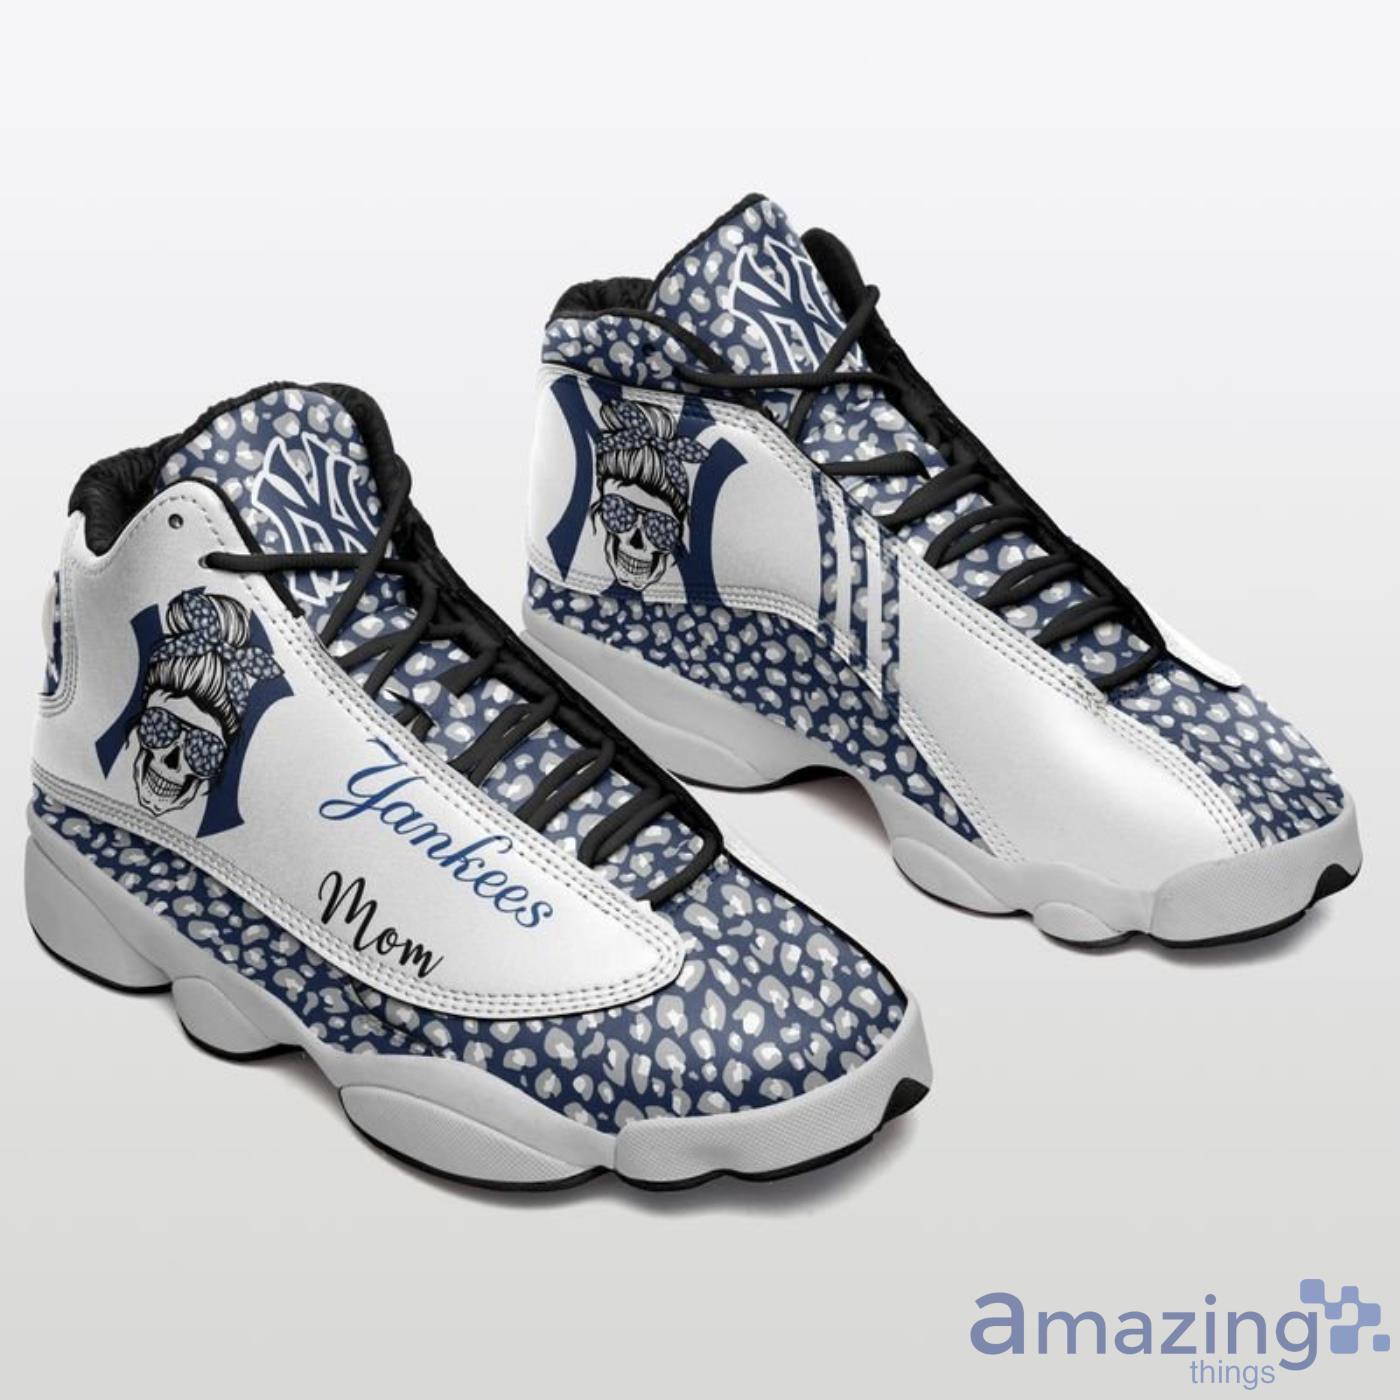 New York Yankees Sneakers Air Jordan 13 Shoes - TAGOTEE %